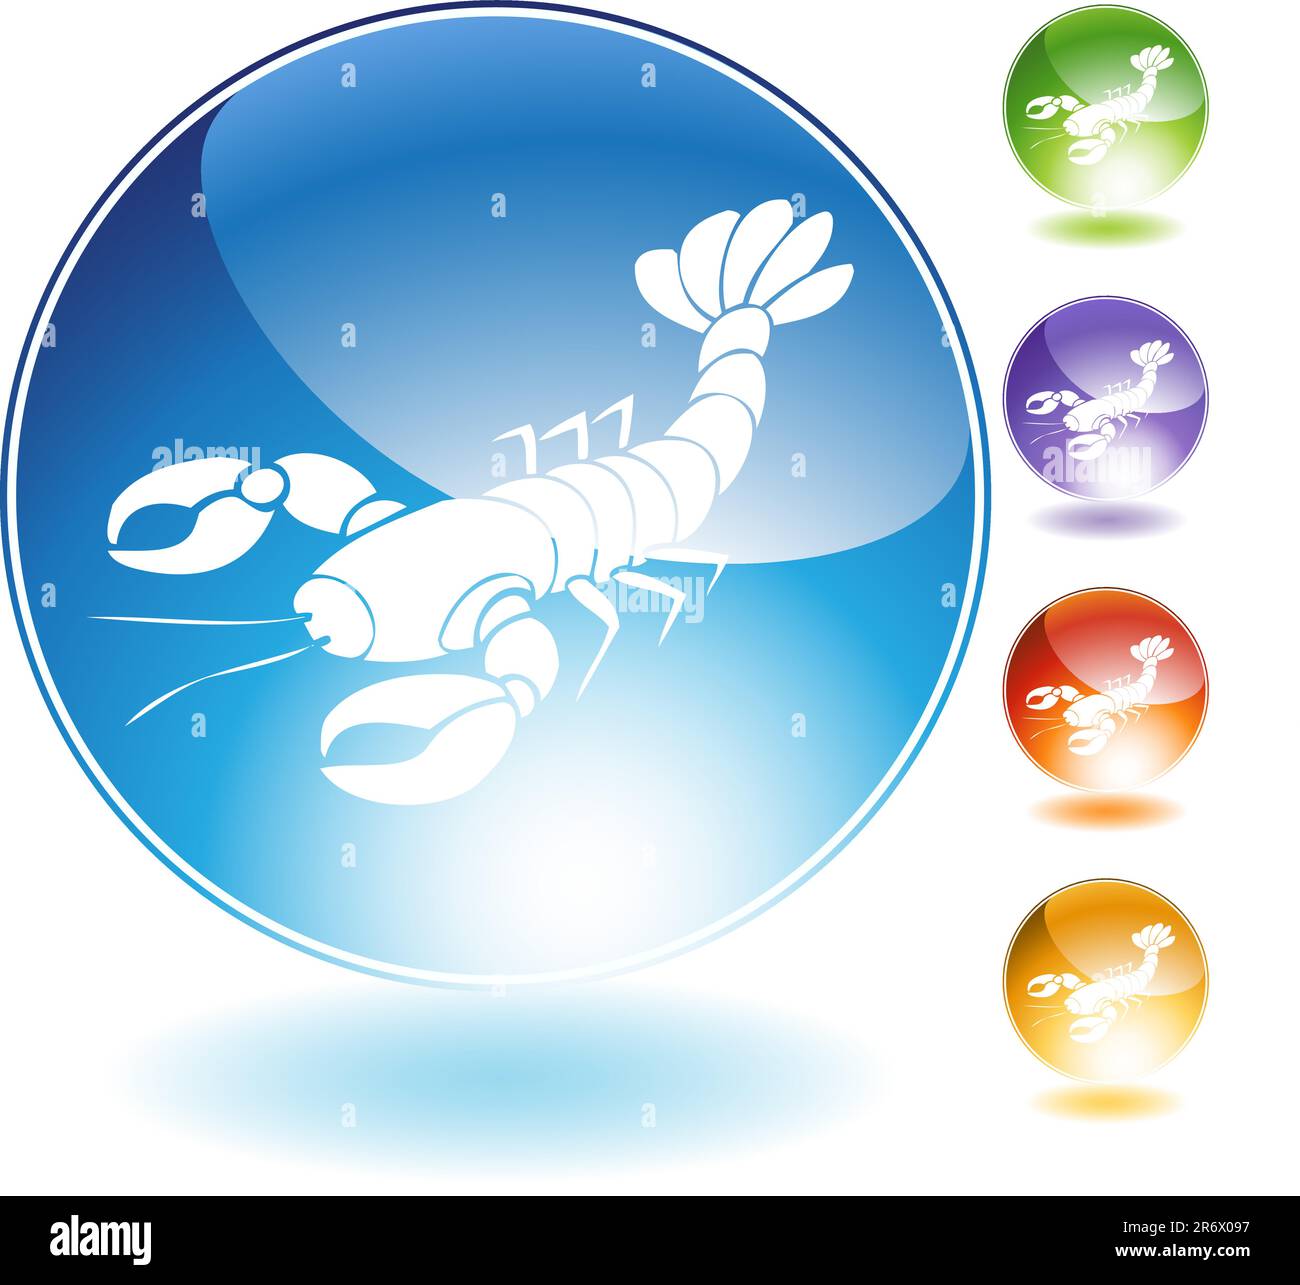 Icona a cristalli di aragosta isolata su sfondo bianco. Illustrazione Vettoriale